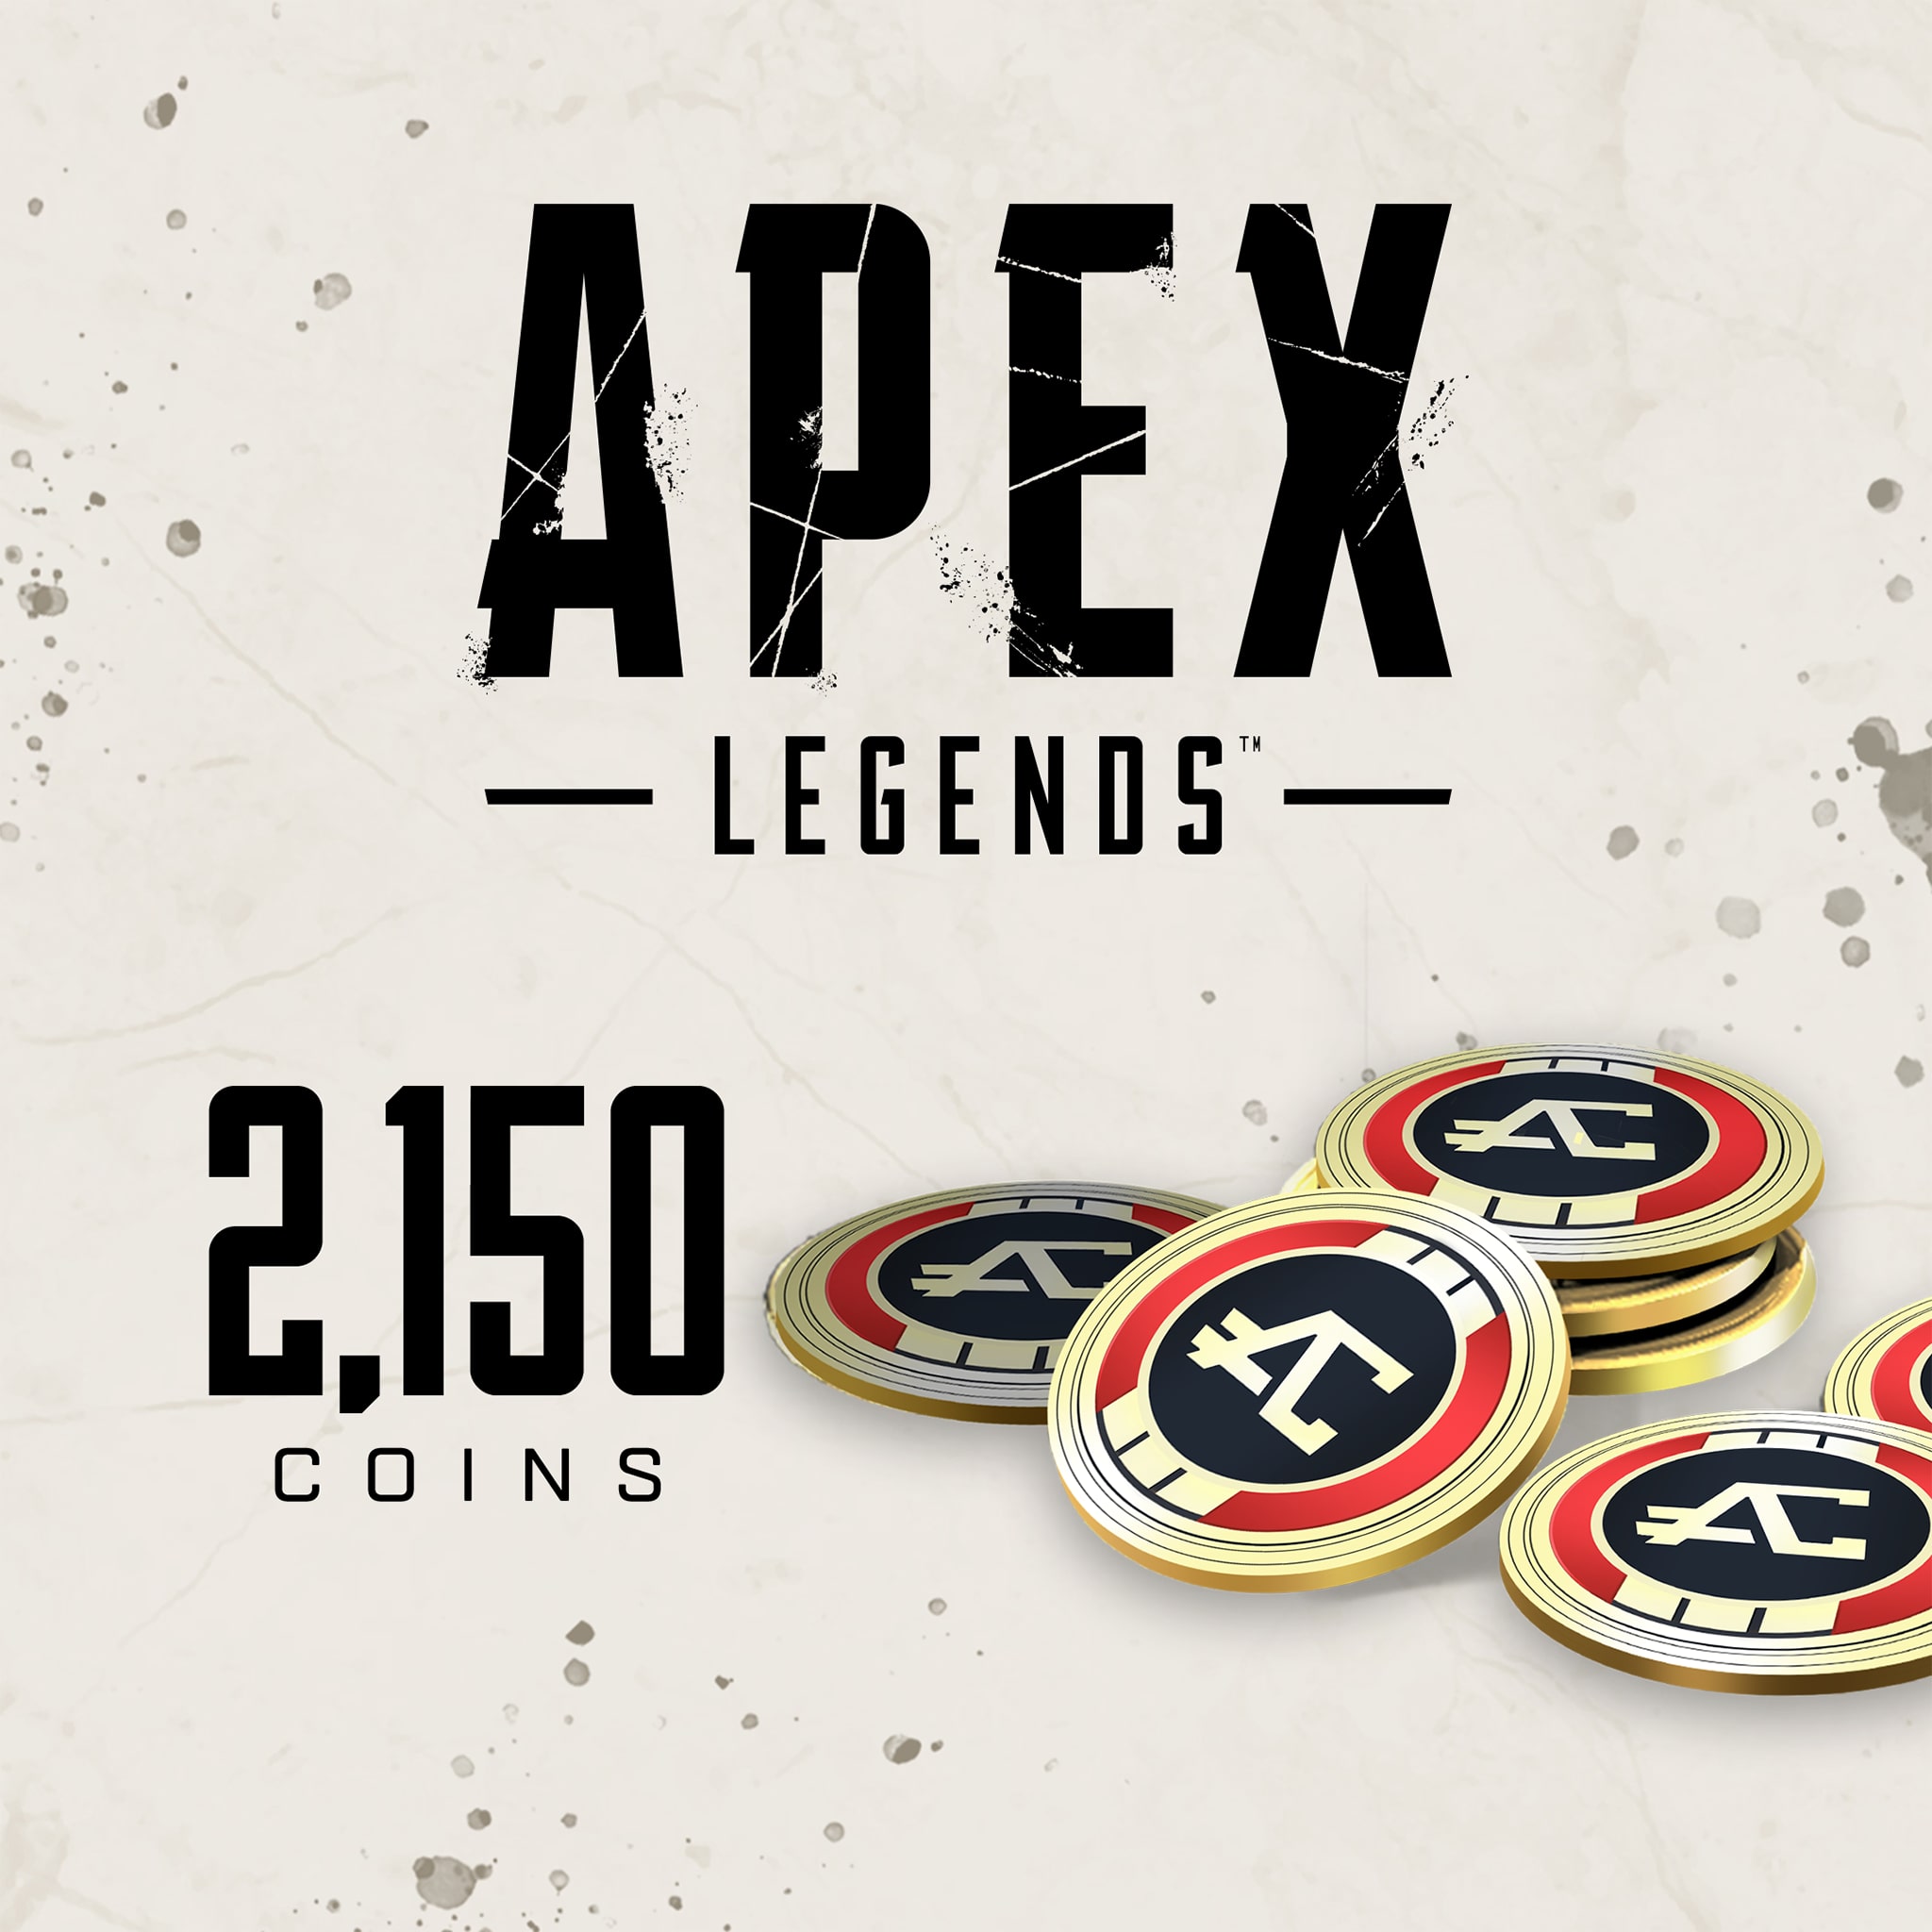 Apex Legends™ – 2.150 Apex Coins